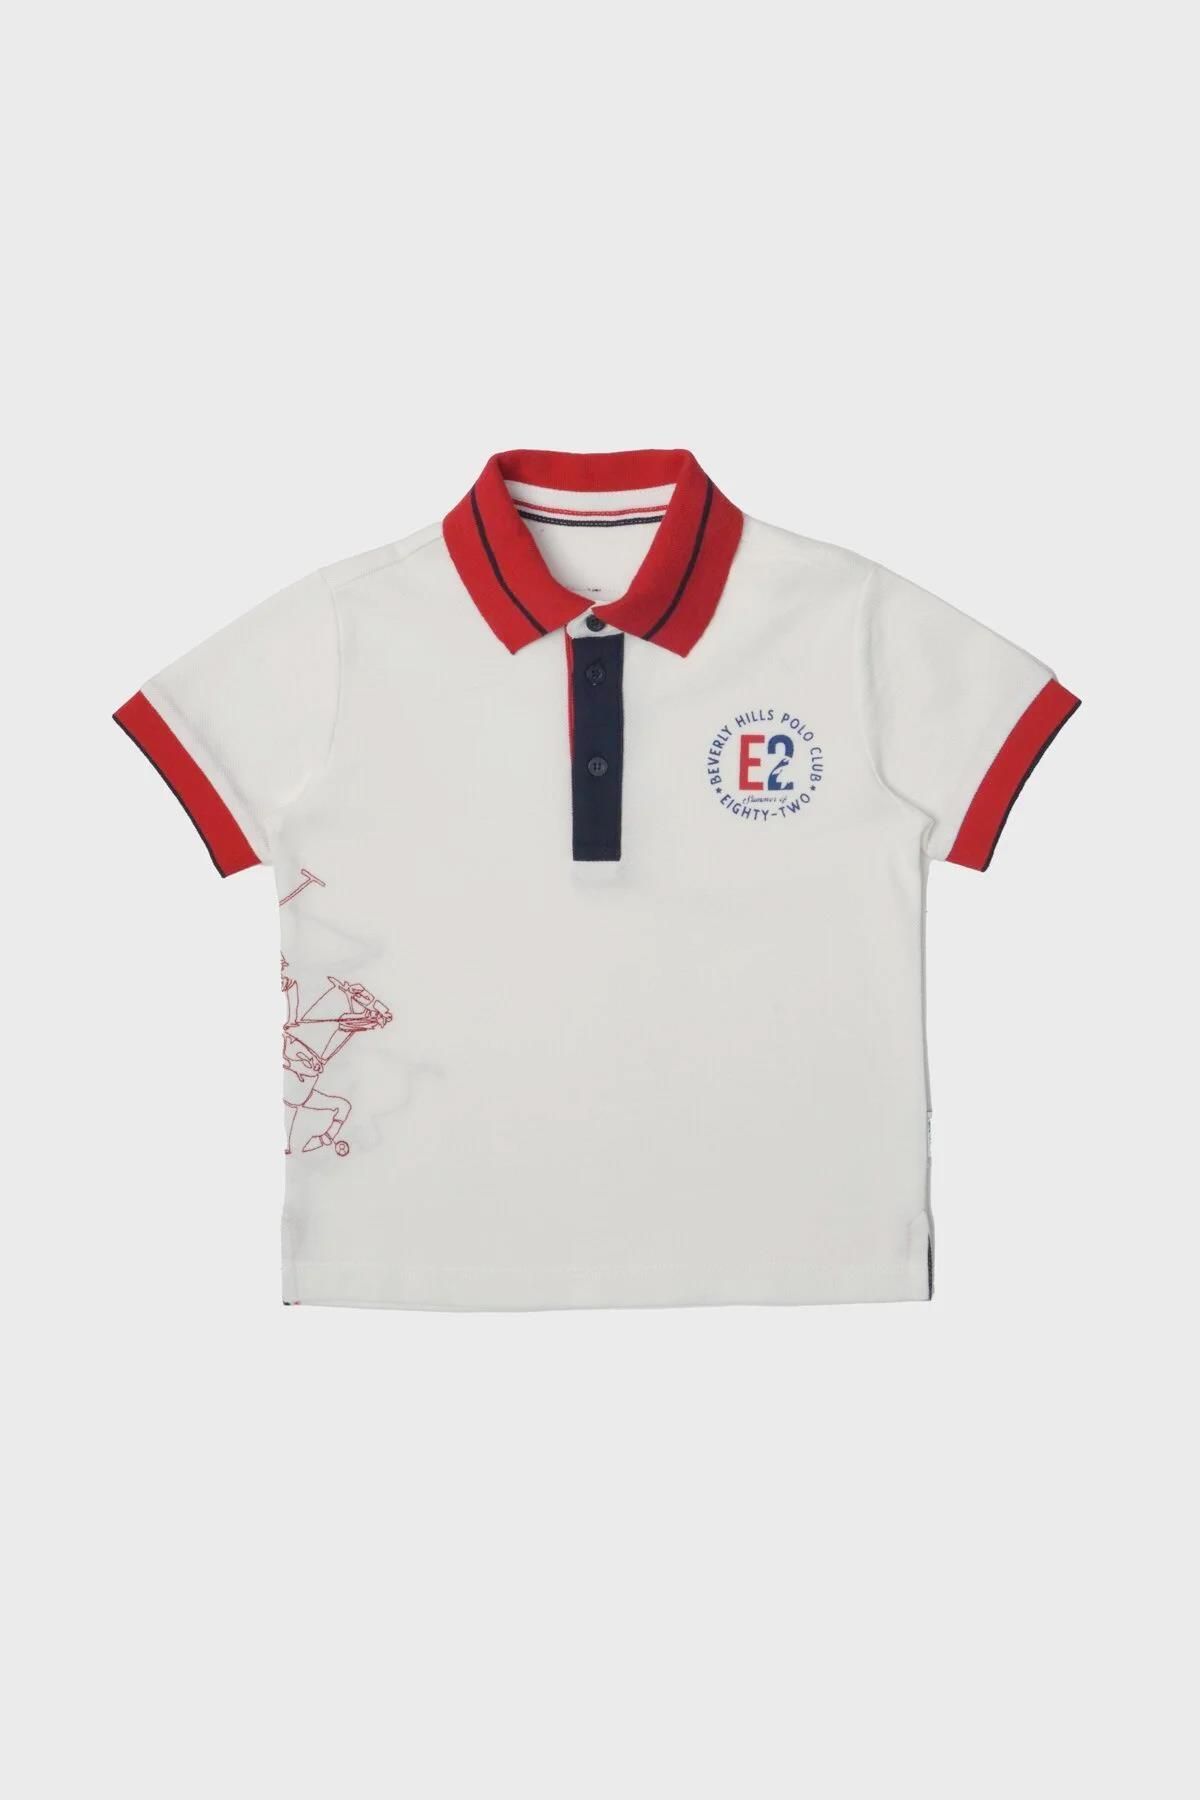 Beverly Hills Polo Club Bg Store Erkek Çocuk Beyaz T-shirt 23ss2bhb513